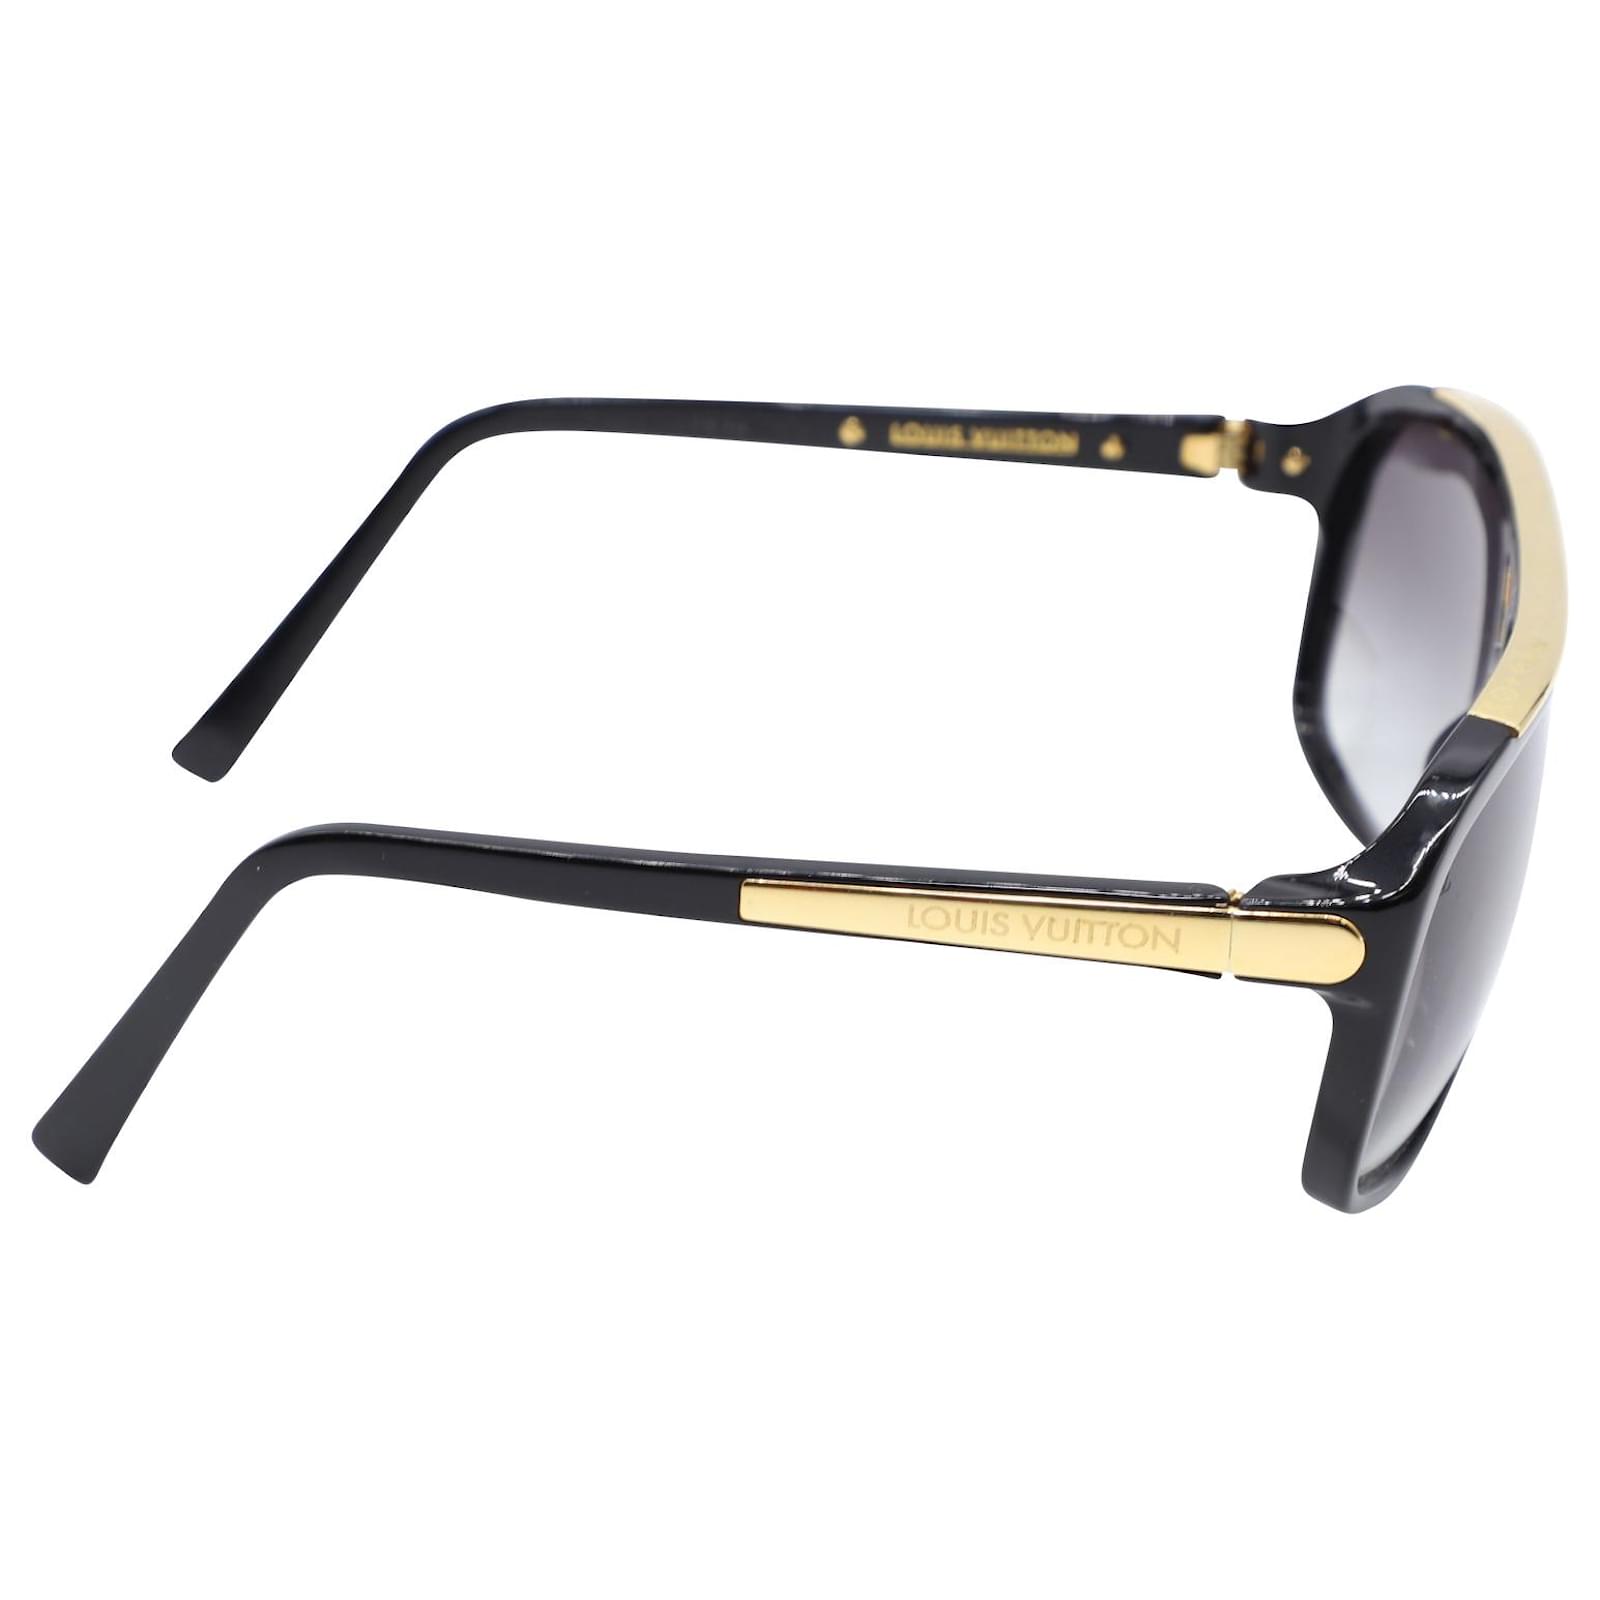 Evidence E Sunglasses Black – Luxuria & Co.